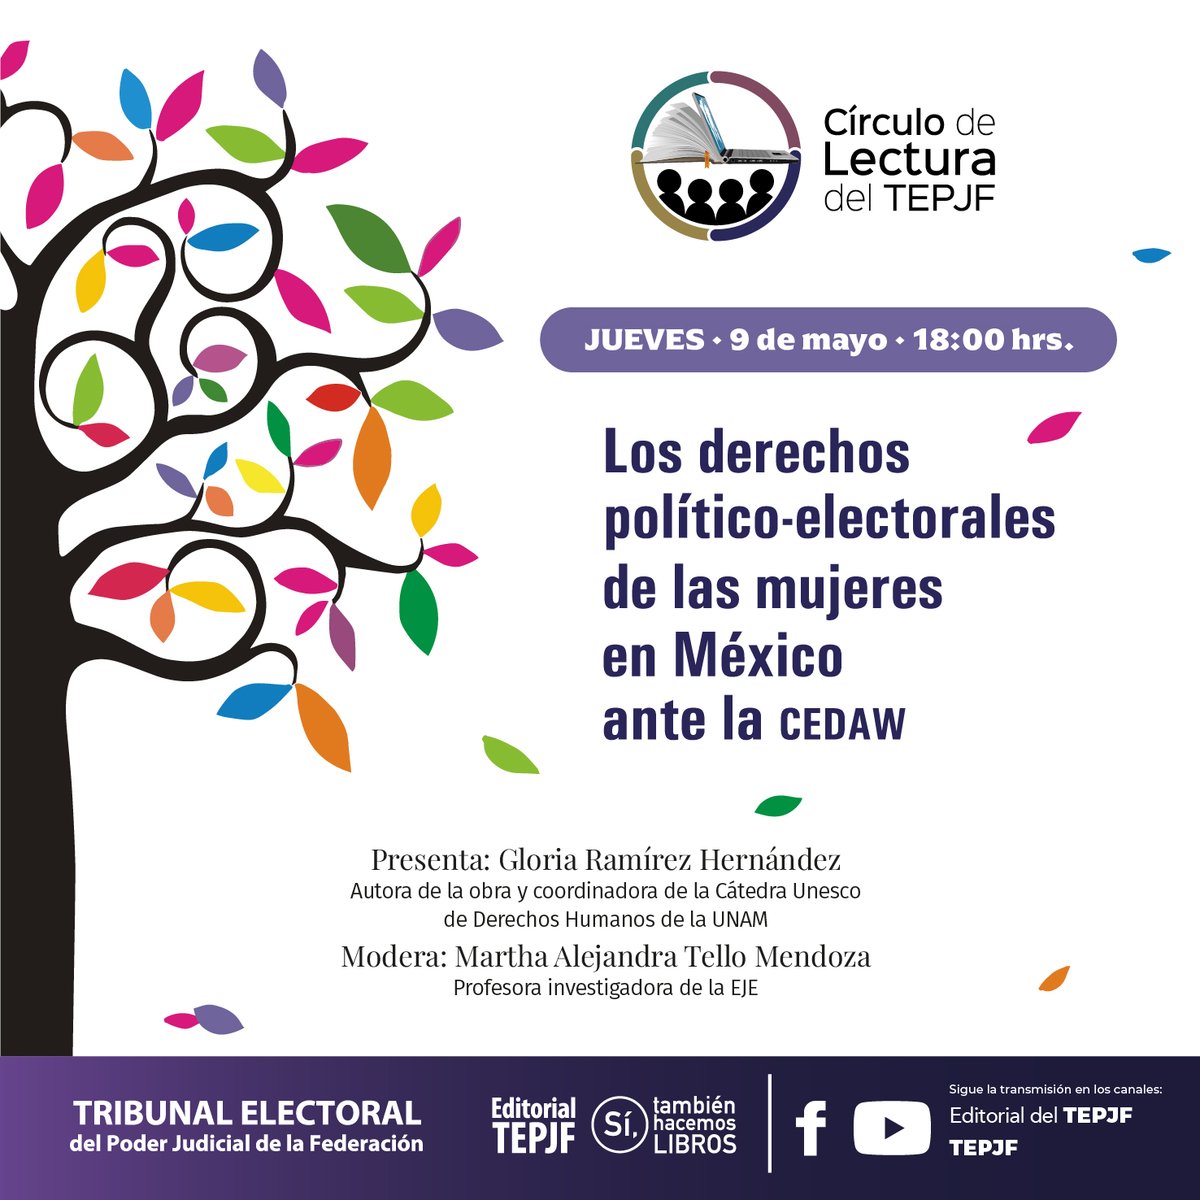 #HOY no te pierdas el Círculo de Lectura del #TEPJF, en donde Gabriela Ramírez Hernández presentará su obra 'Los derechos político-electorales de las Mujeres en México ante la CEDAW'

Transmisión por redes de @EditorialTEPJF.

🏢@TEPJF_informa
@TEPJF_SRCDMX
@TEPJF_Esp